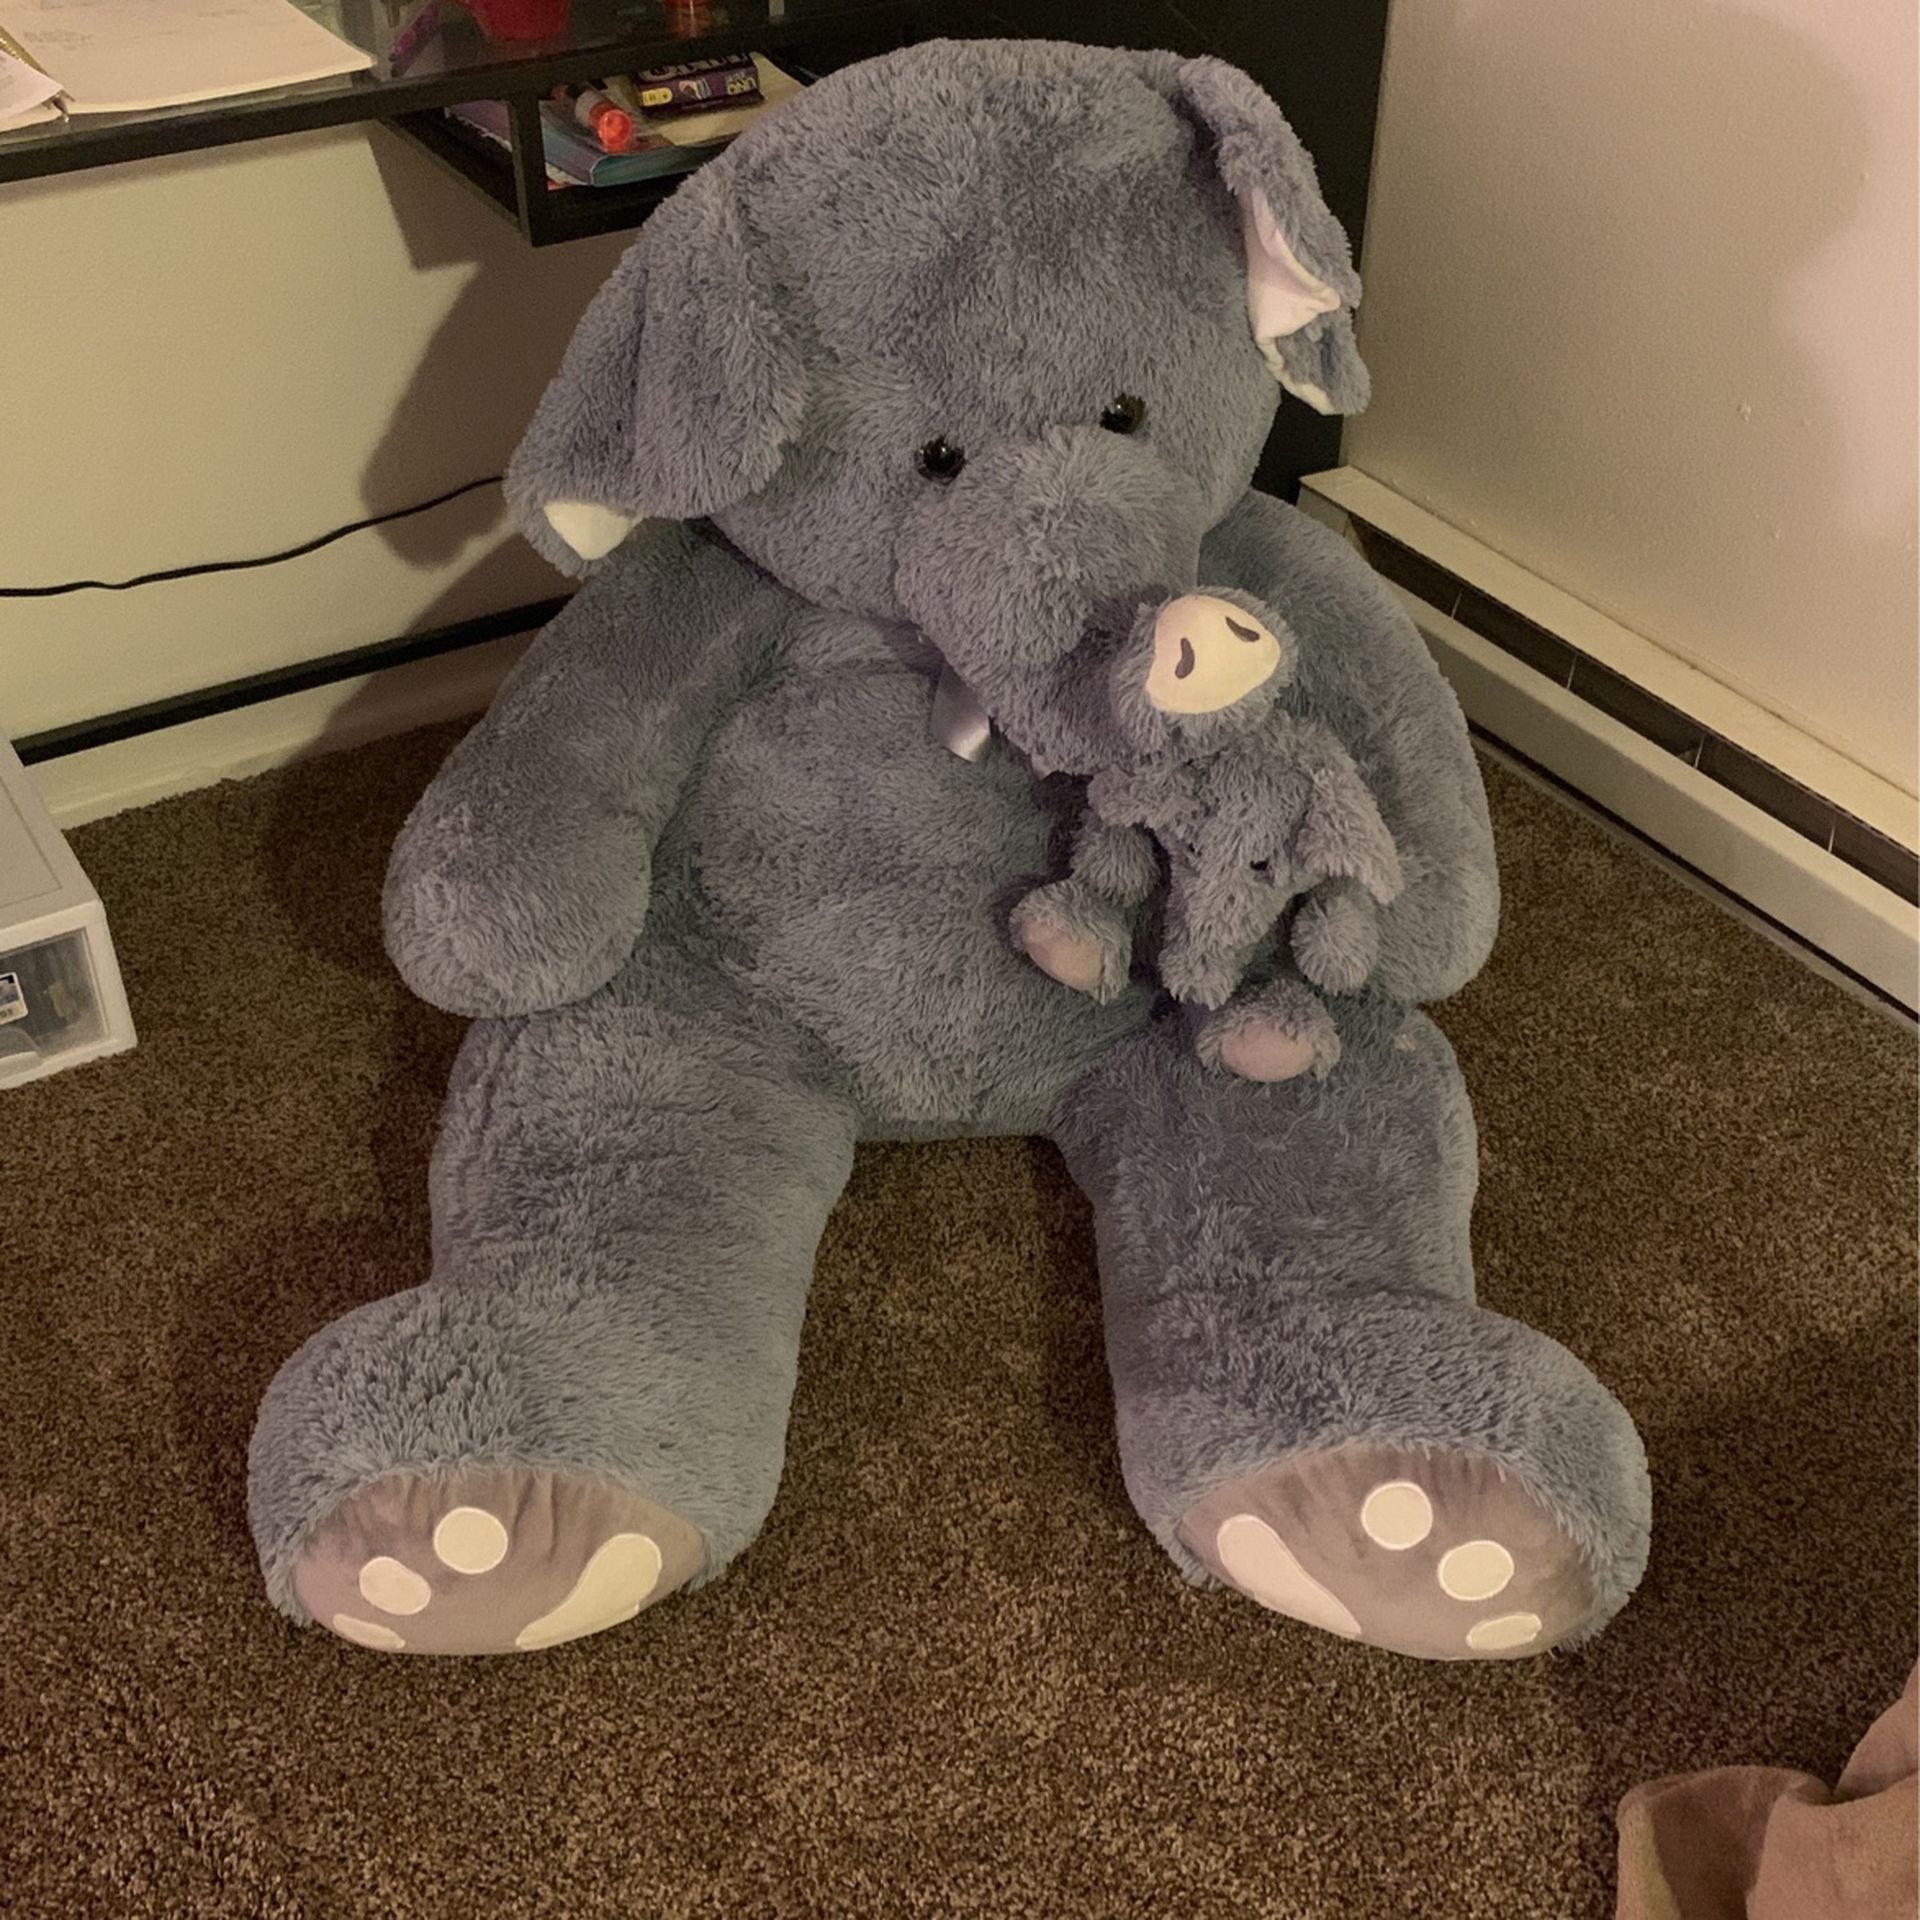 Large elephant stuffed animal